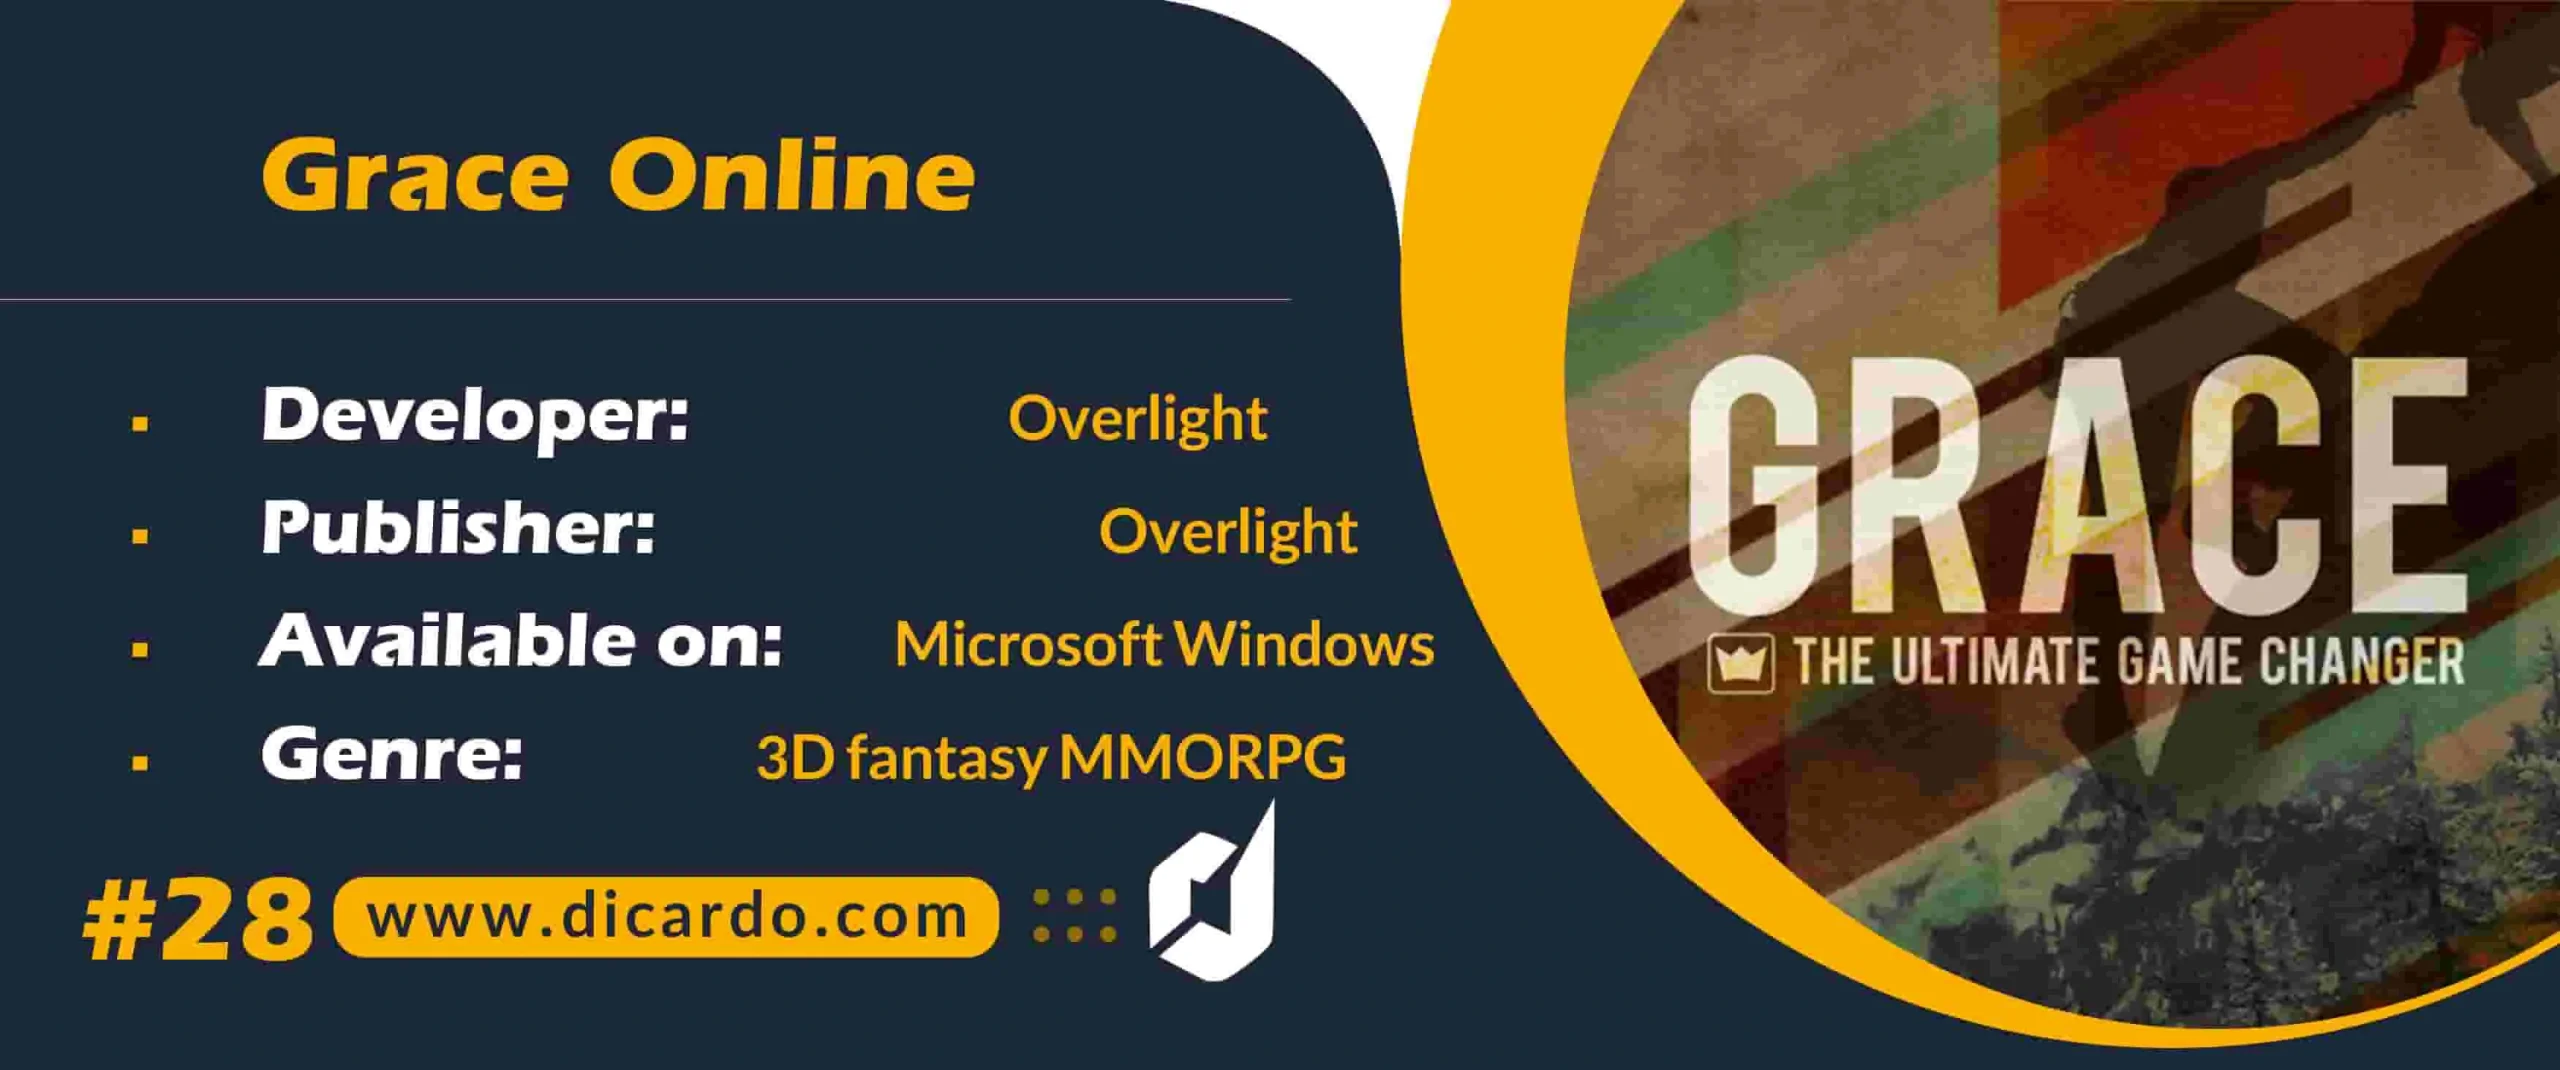 #28 گریس آنلاین Grace Online از بازیهای PC در ژانر MMORPG فانتزی سه بعدی